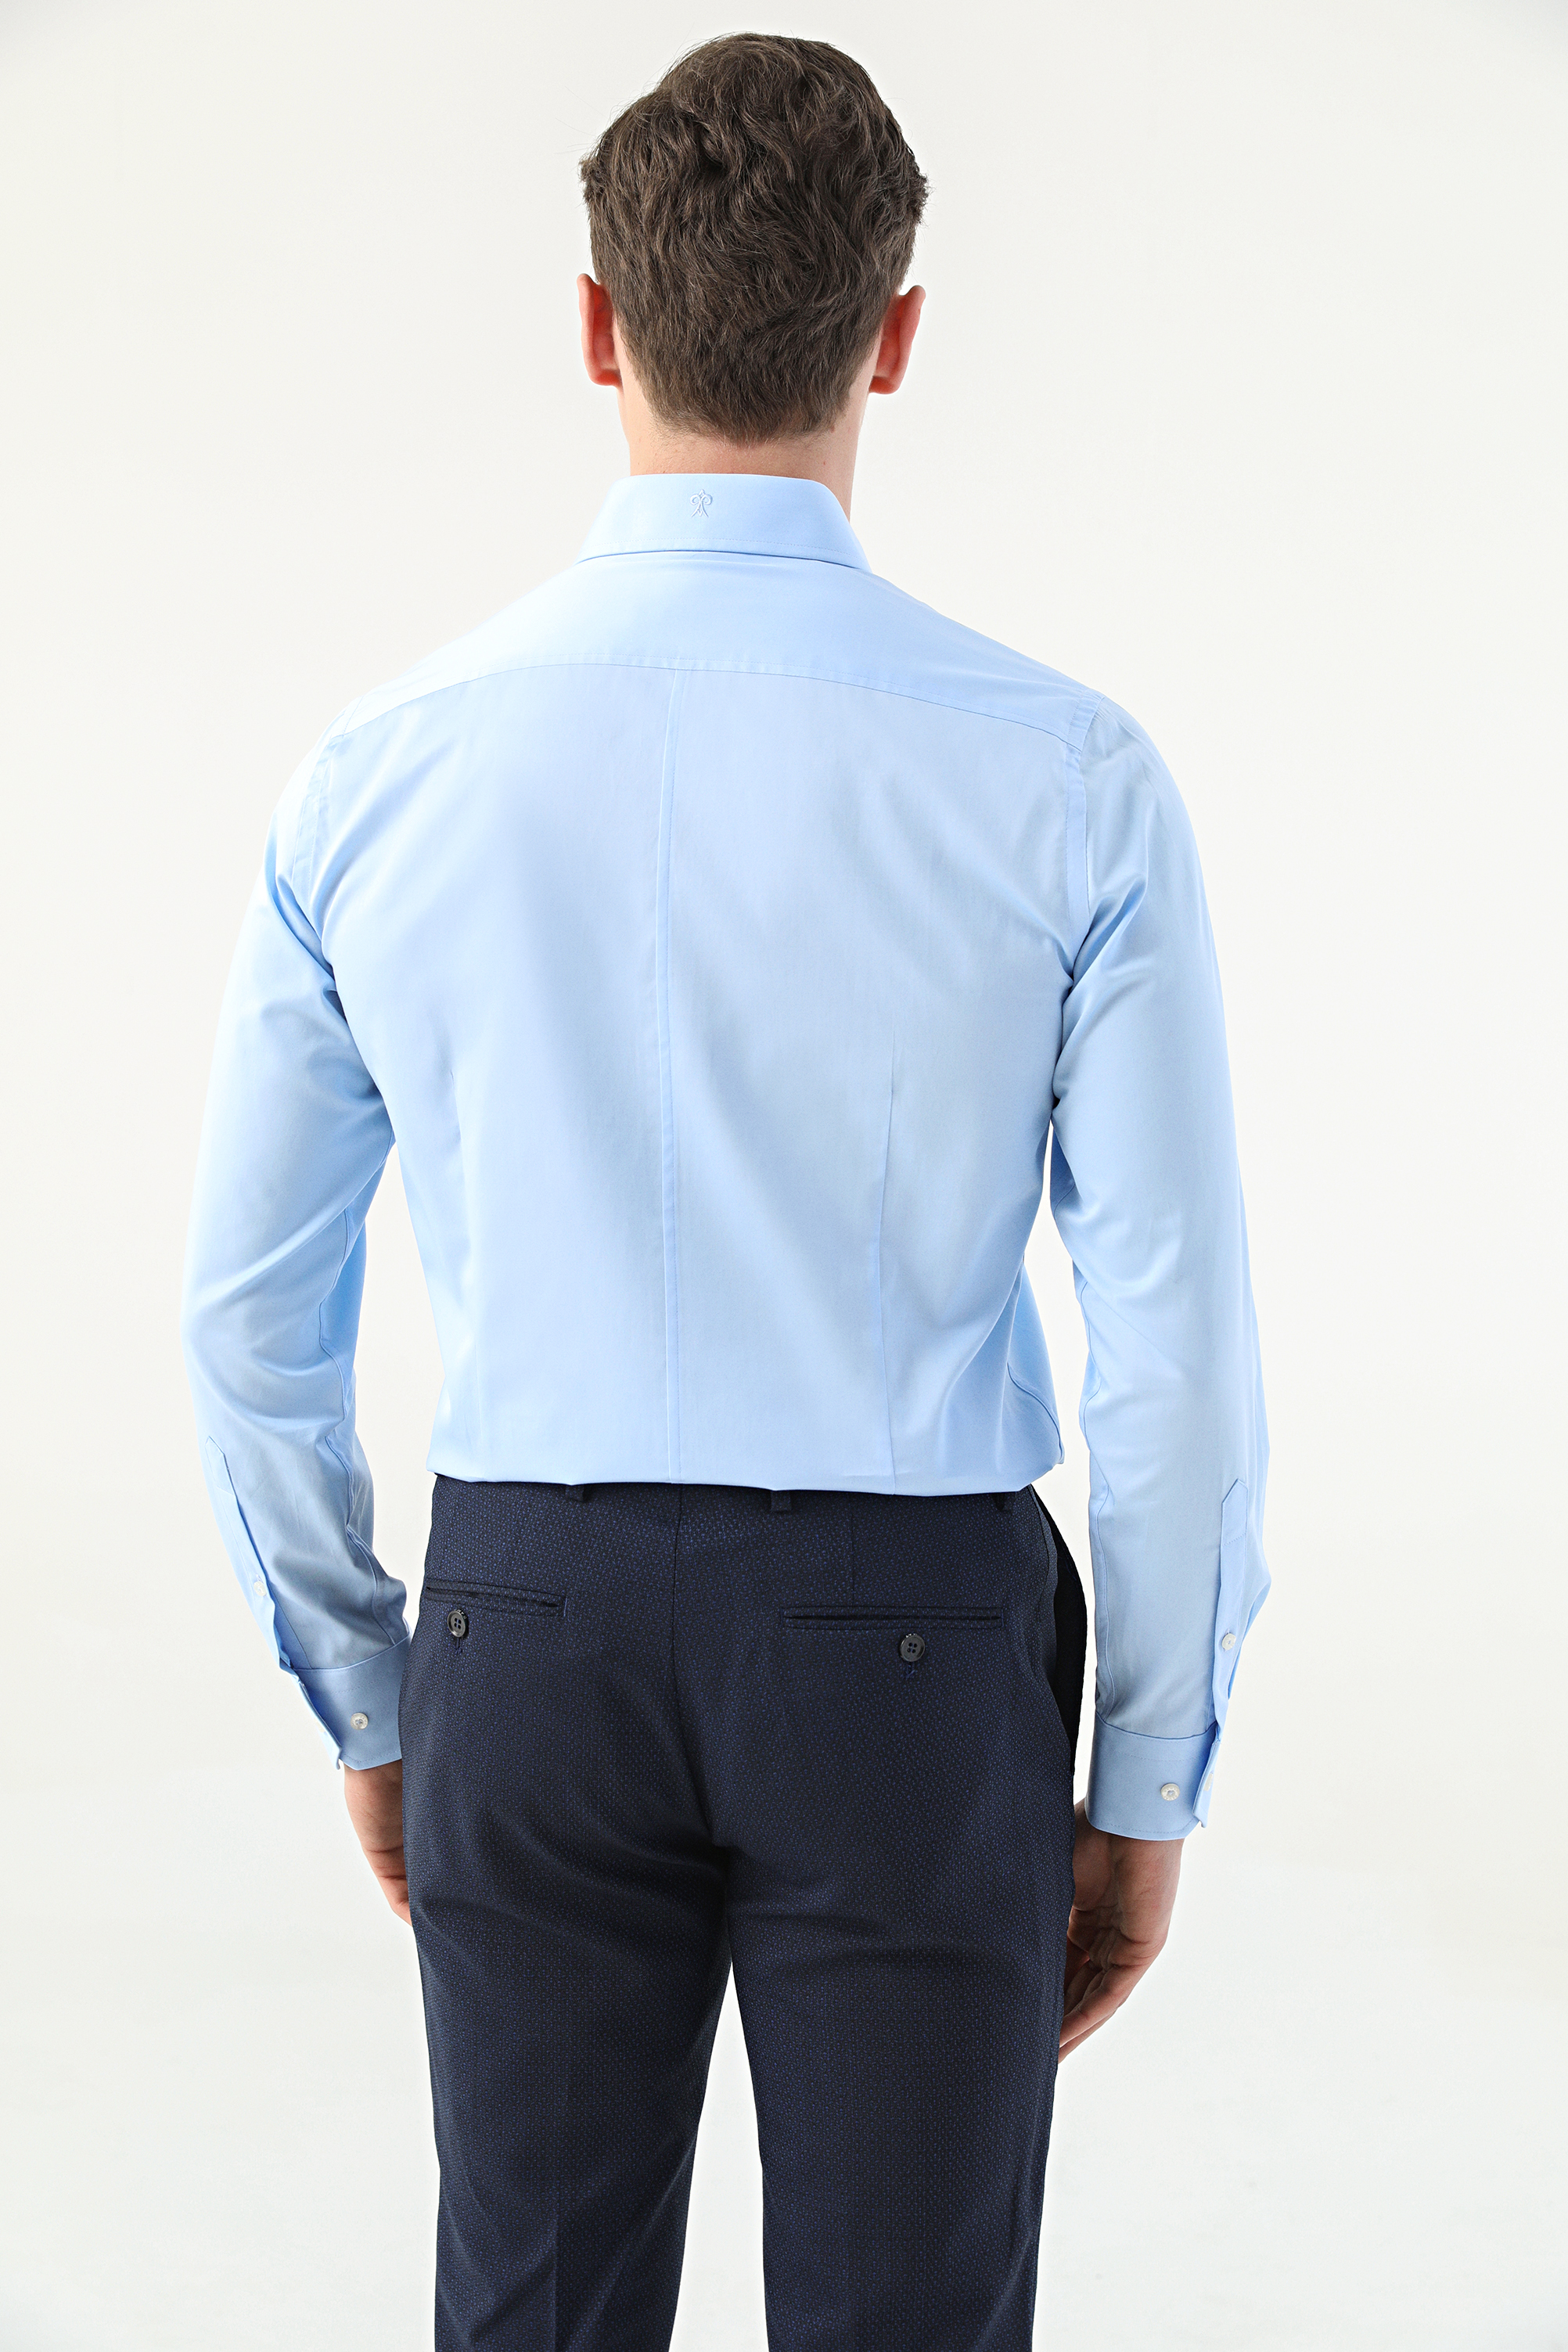 Damat Tween Damat Slim Fit Mavi Düz Nano Care Gömlek. 4